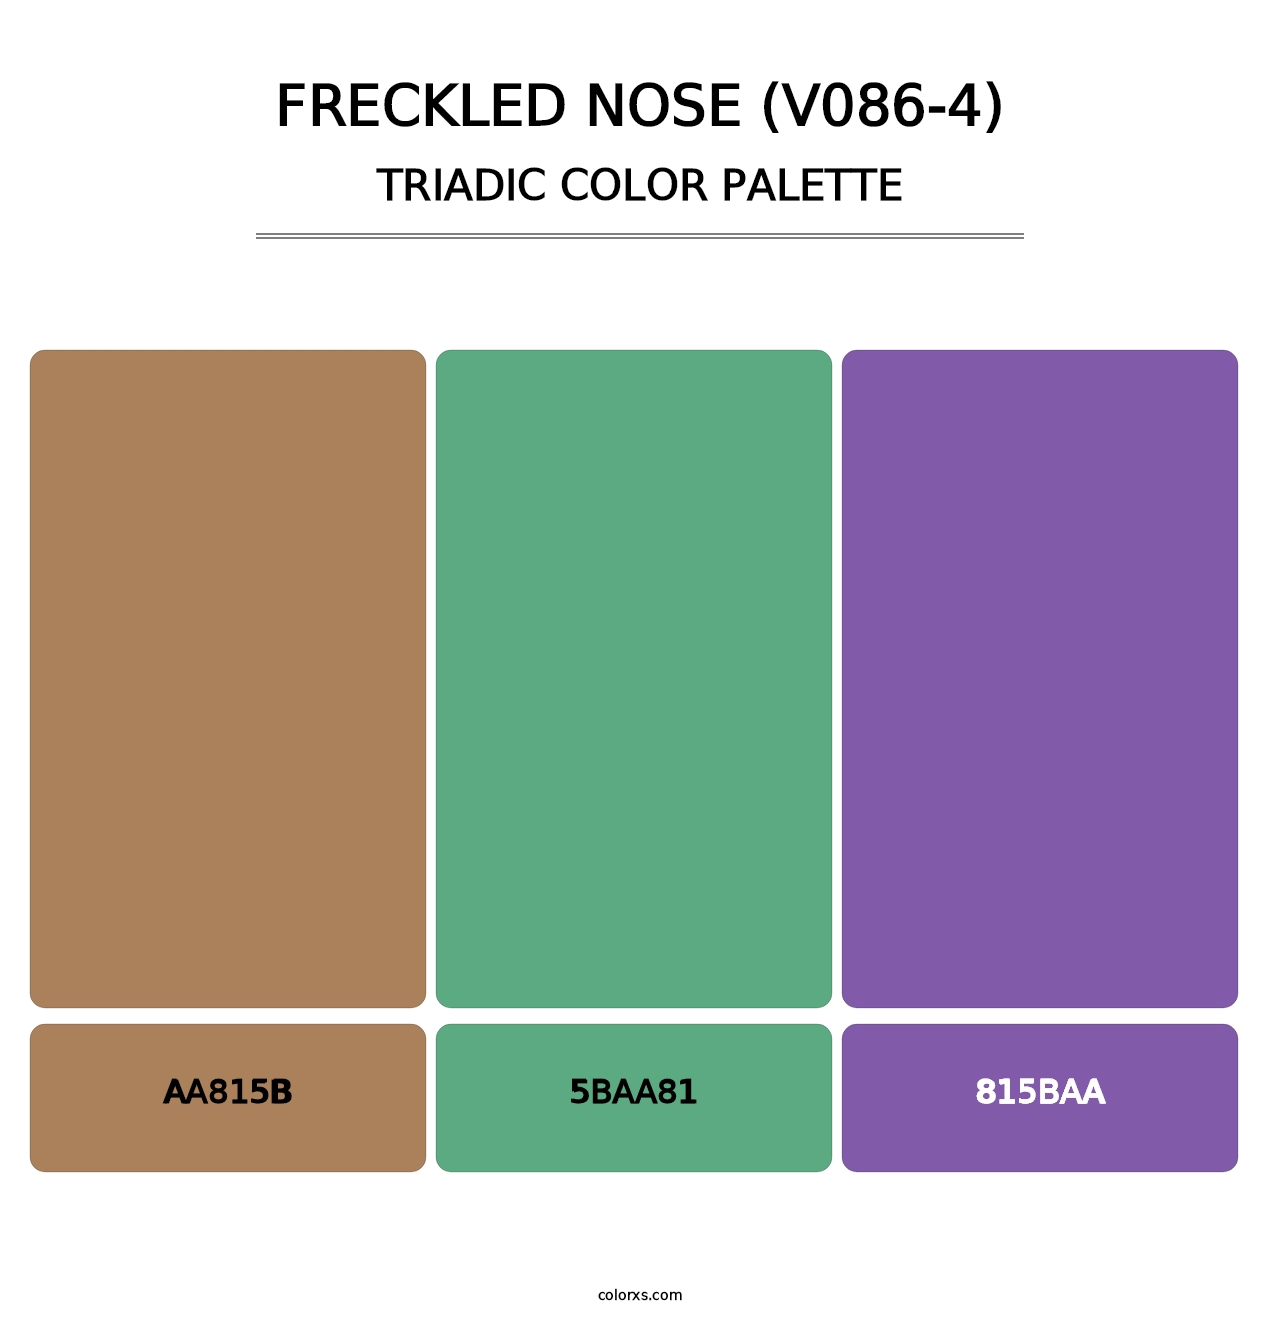 Freckled Nose (V086-4) - Triadic Color Palette